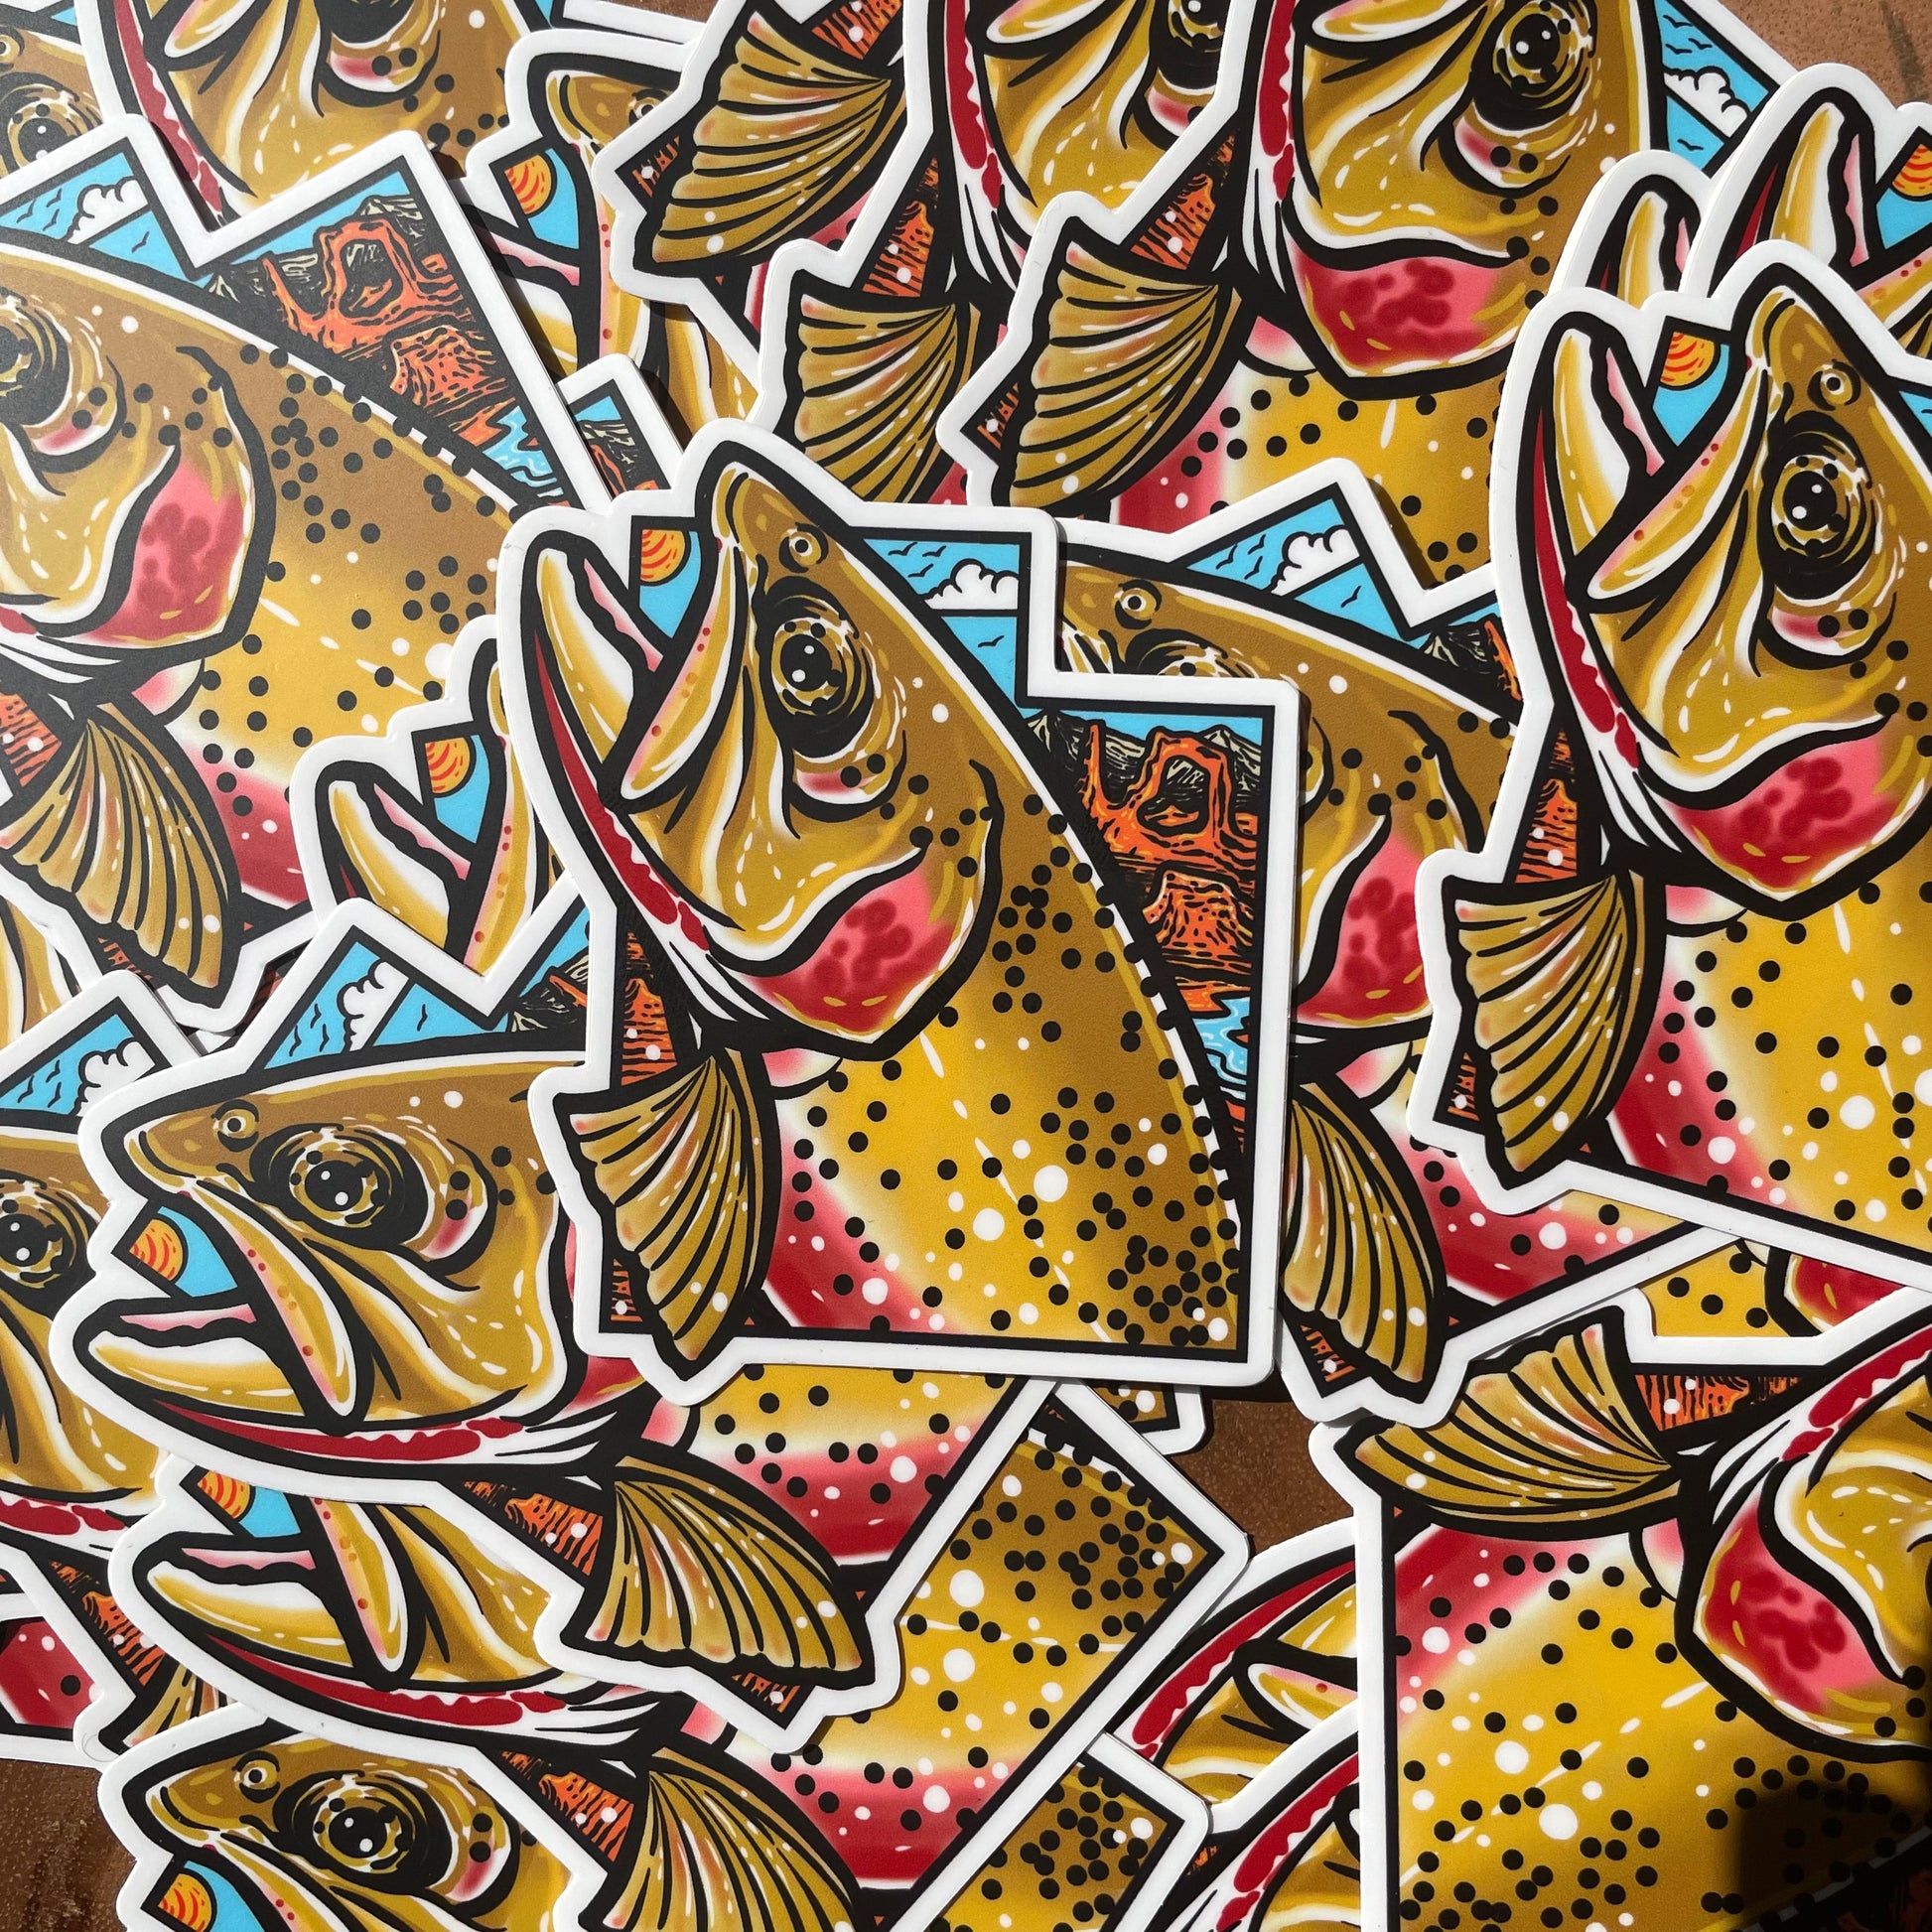 Utah Cutthroat Trout fly fishing sticker slap